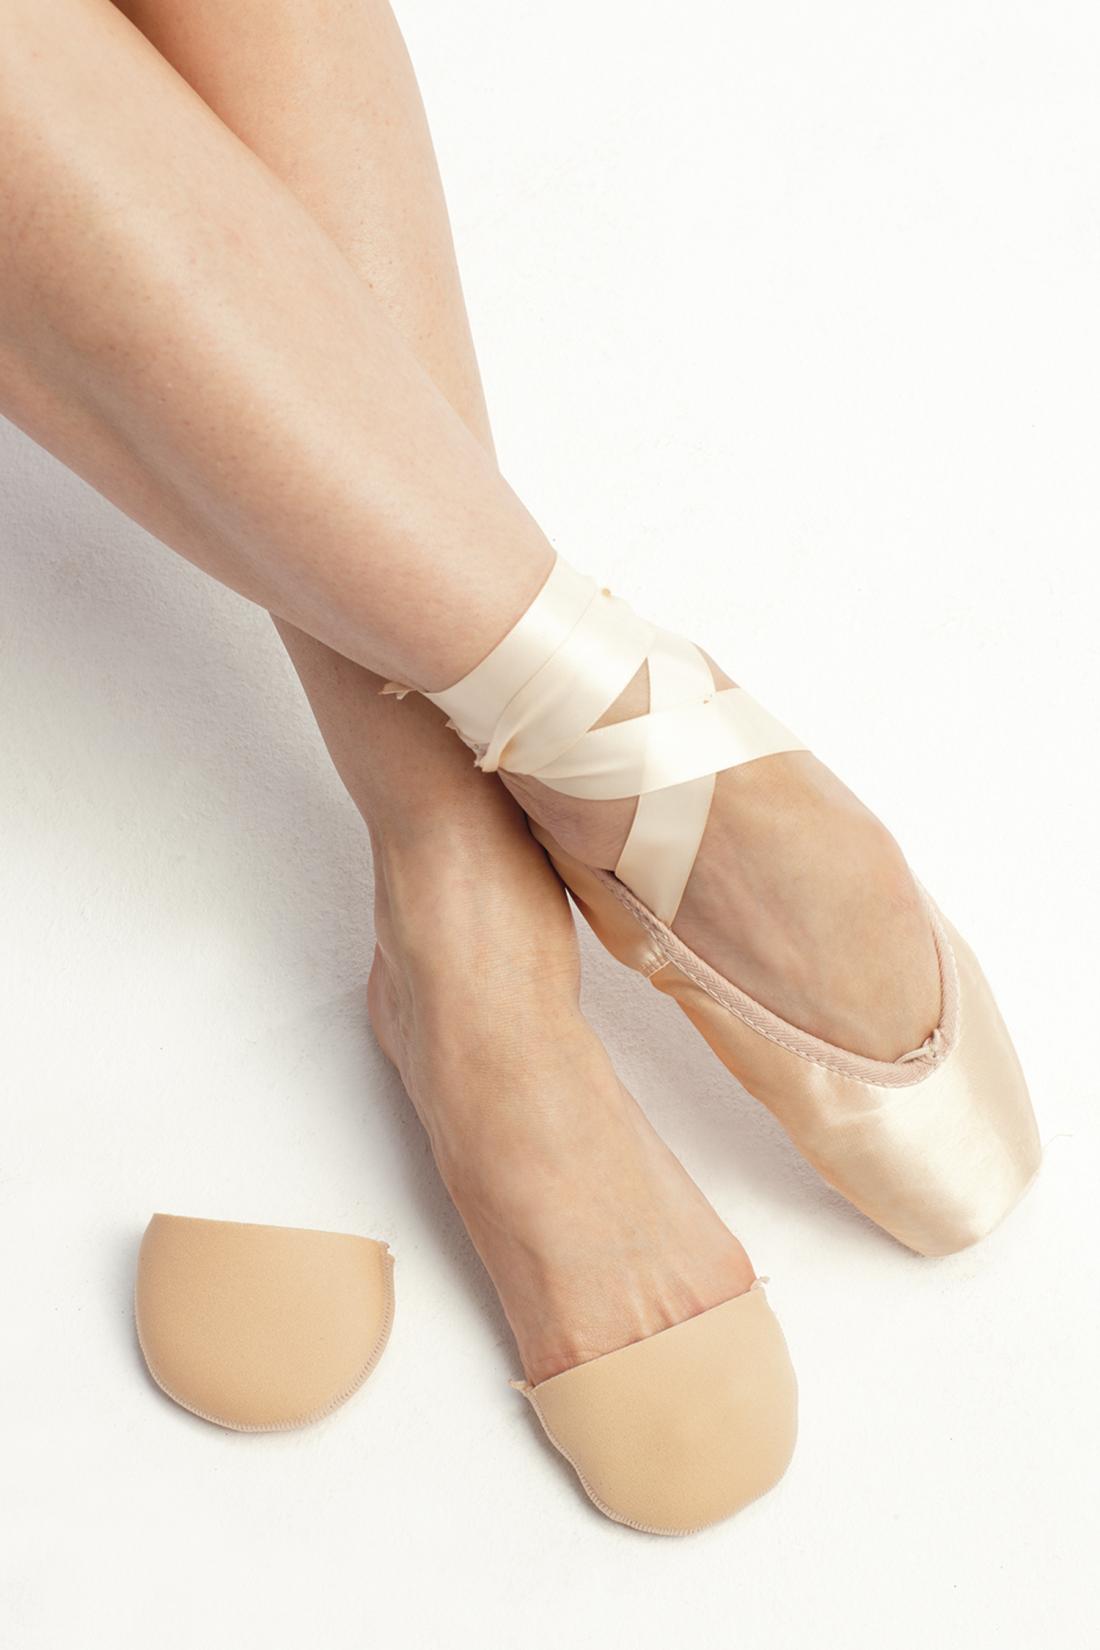 Protectores básicos para zapatillas de punta de Intermezzo ballet punteras